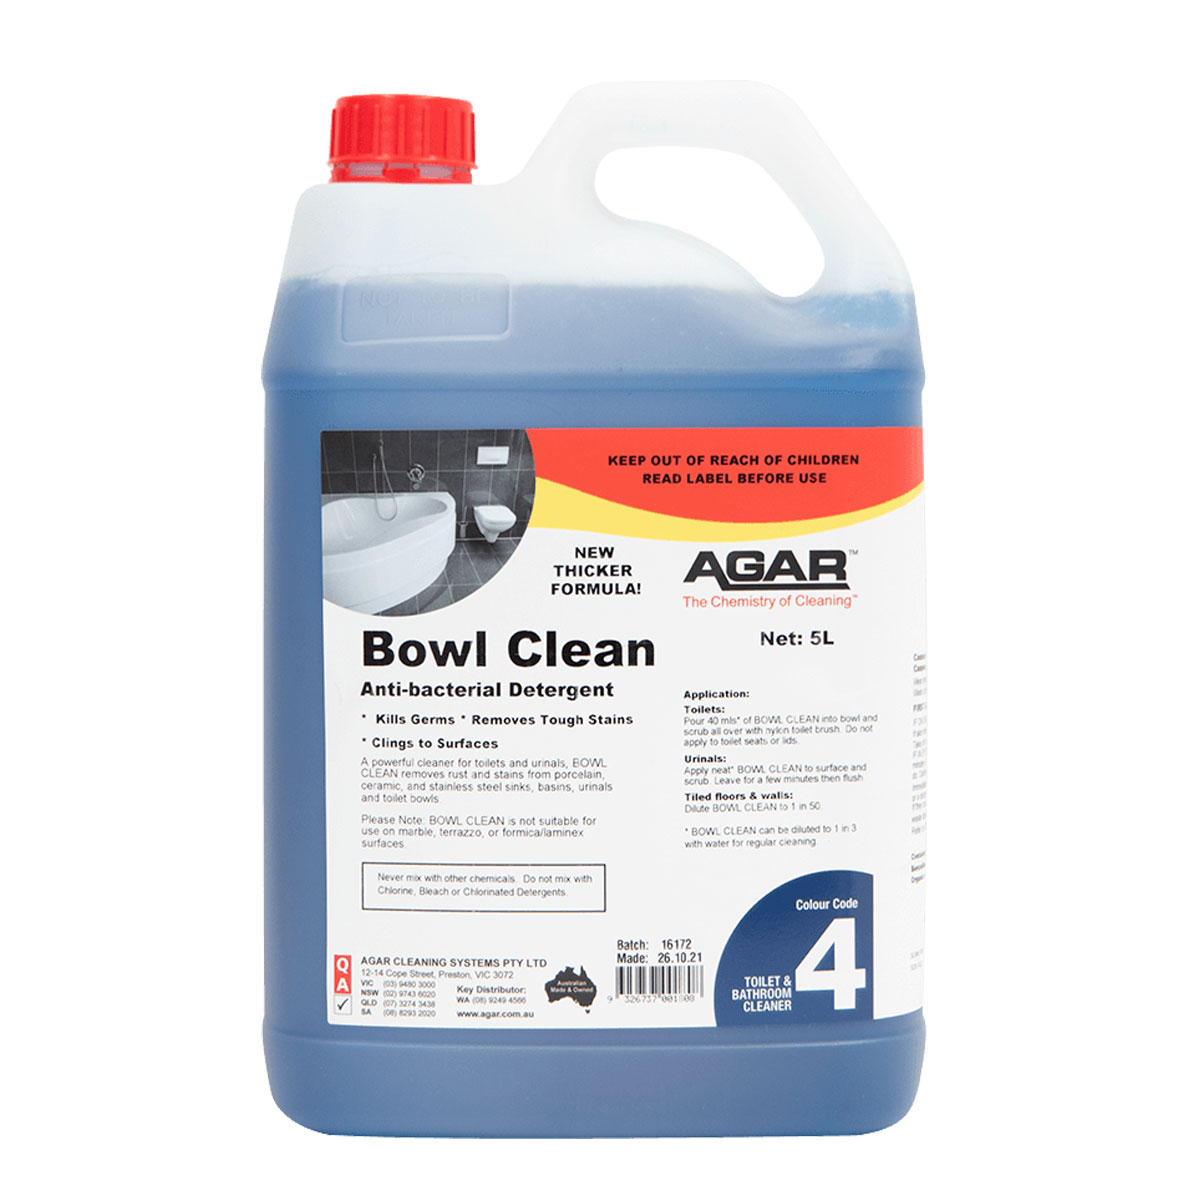 Agar Bowl Clean